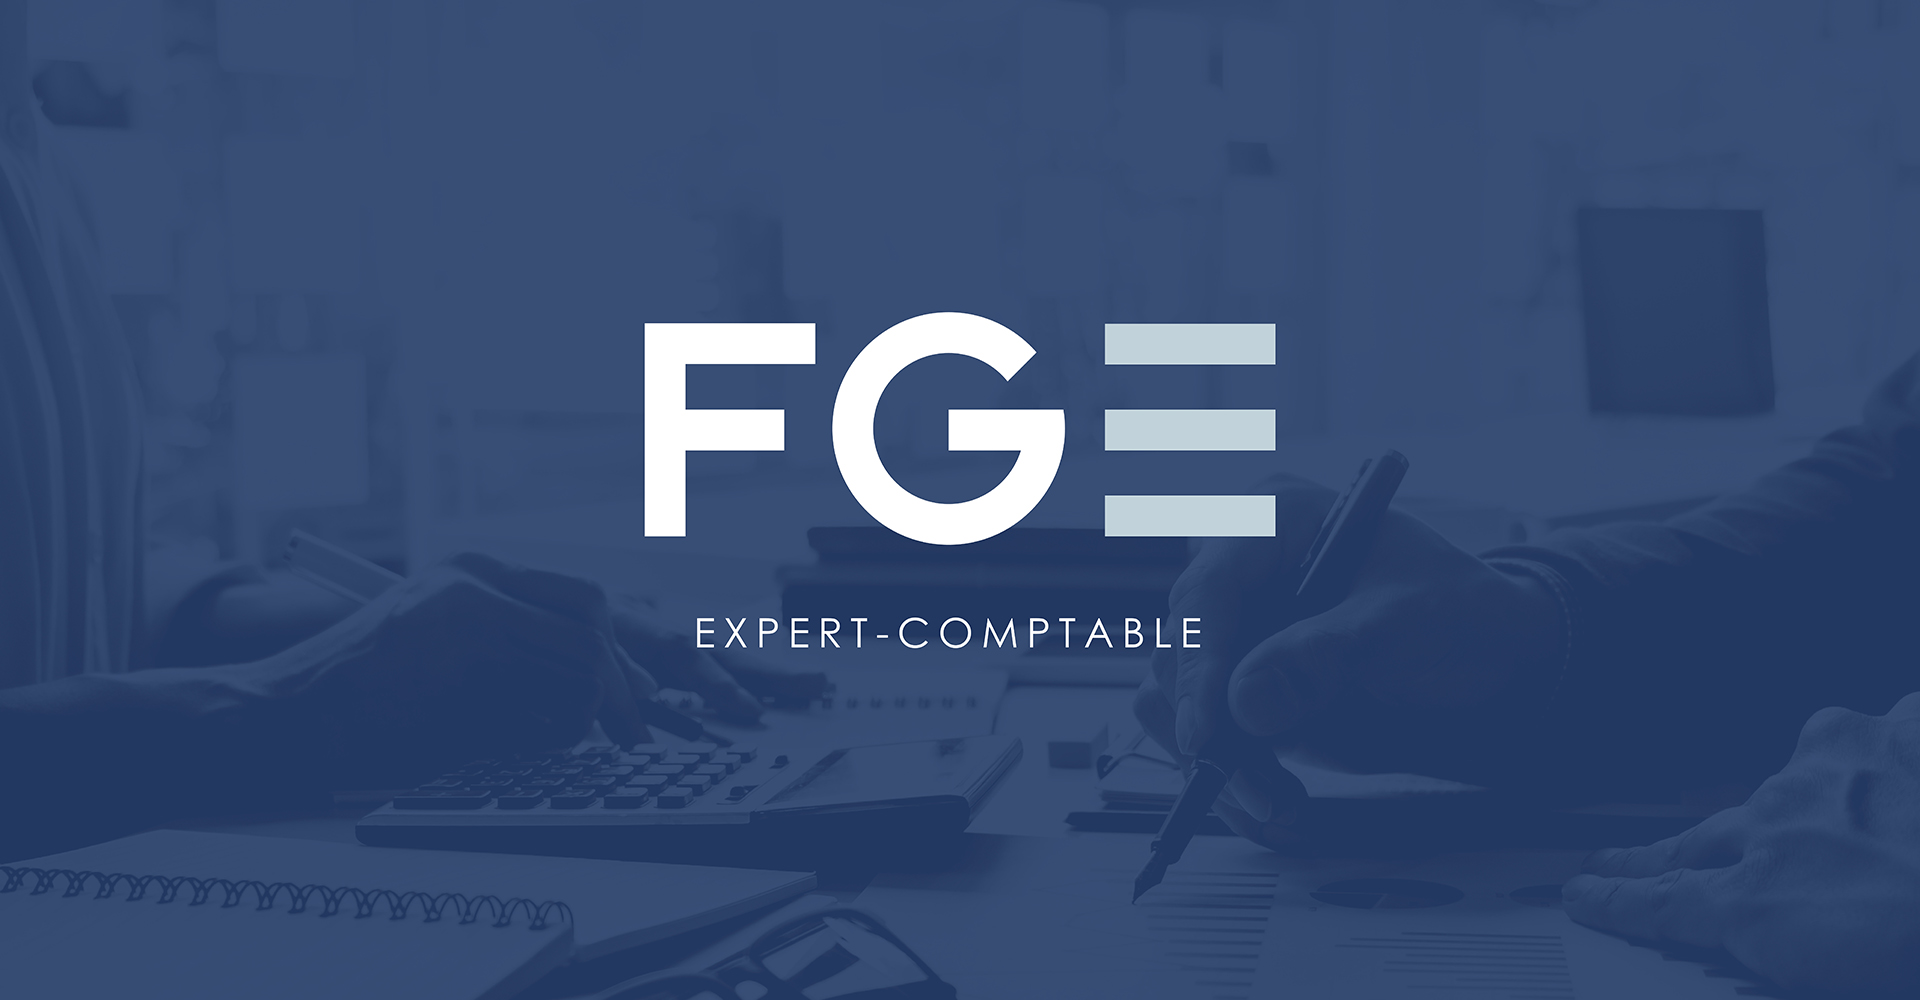 Création d'un logo, d'une identité visuelle et de contenu de communication pour FGE Bureau expert comptable - Periskop